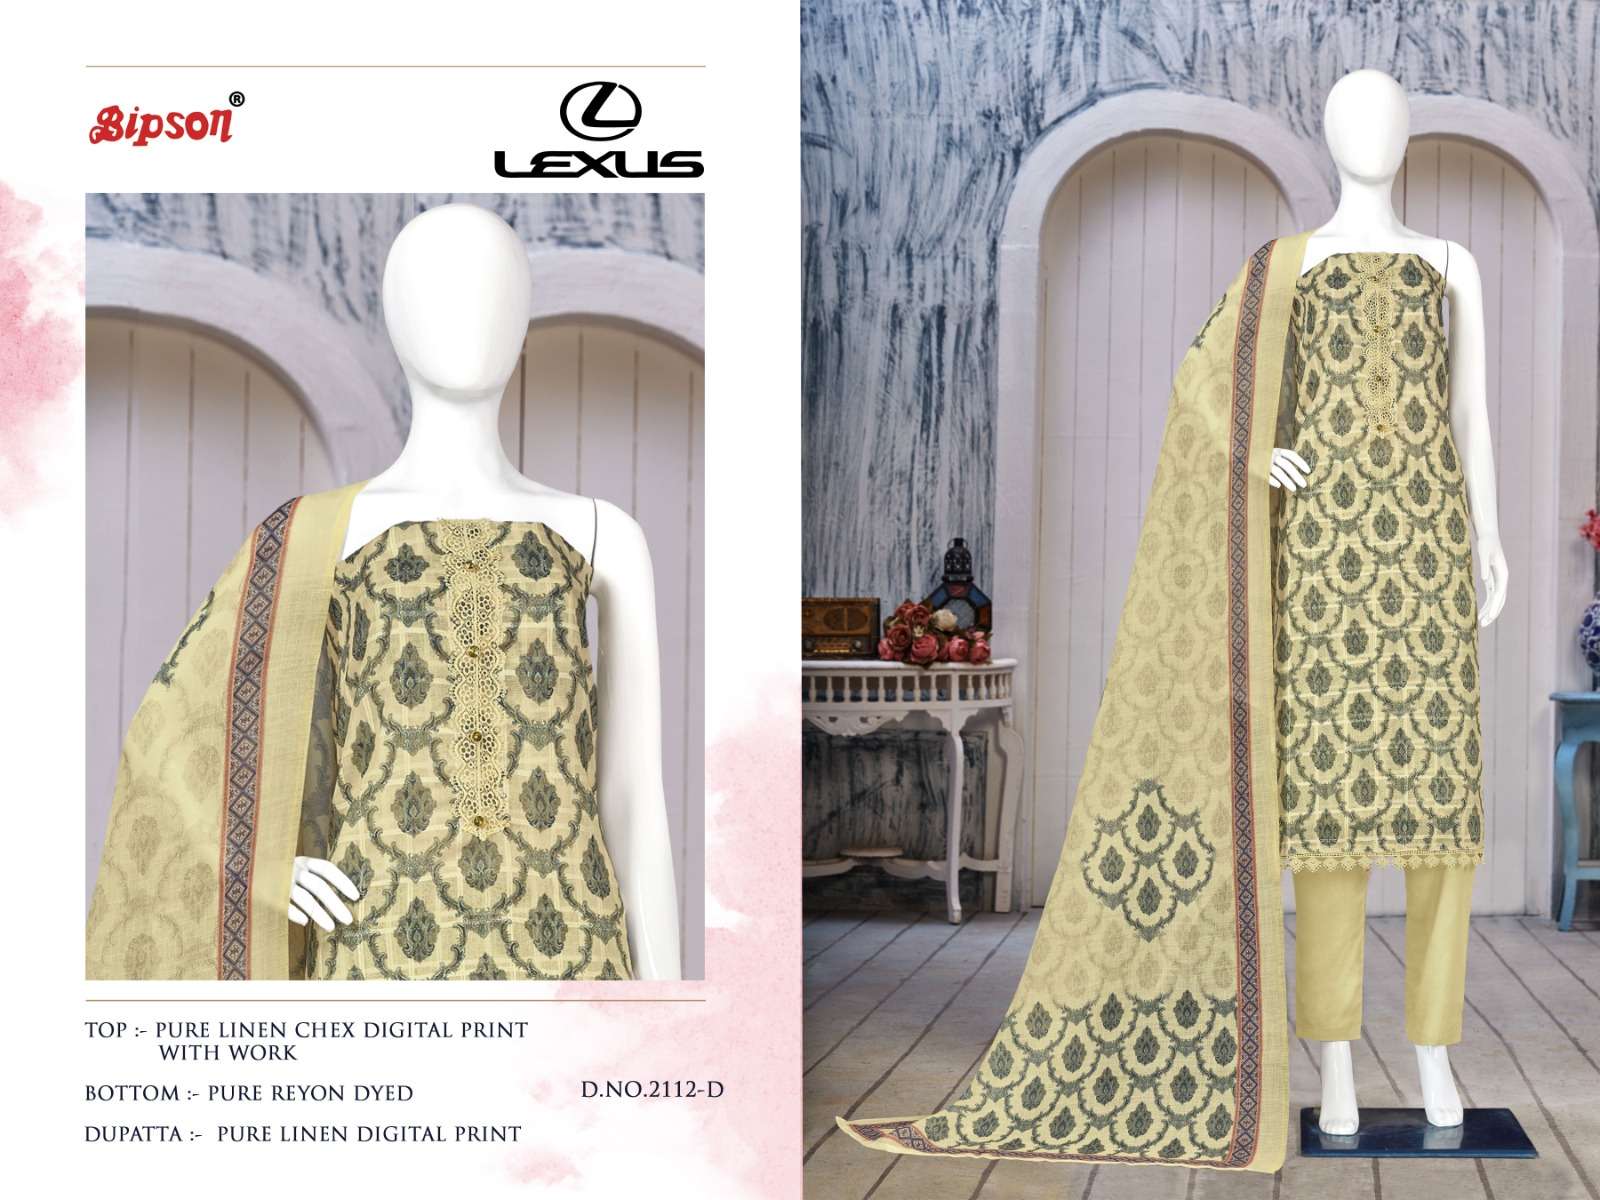 bipson prints lexus 2112 series fancy designer dress material catalogue manufacturer surat